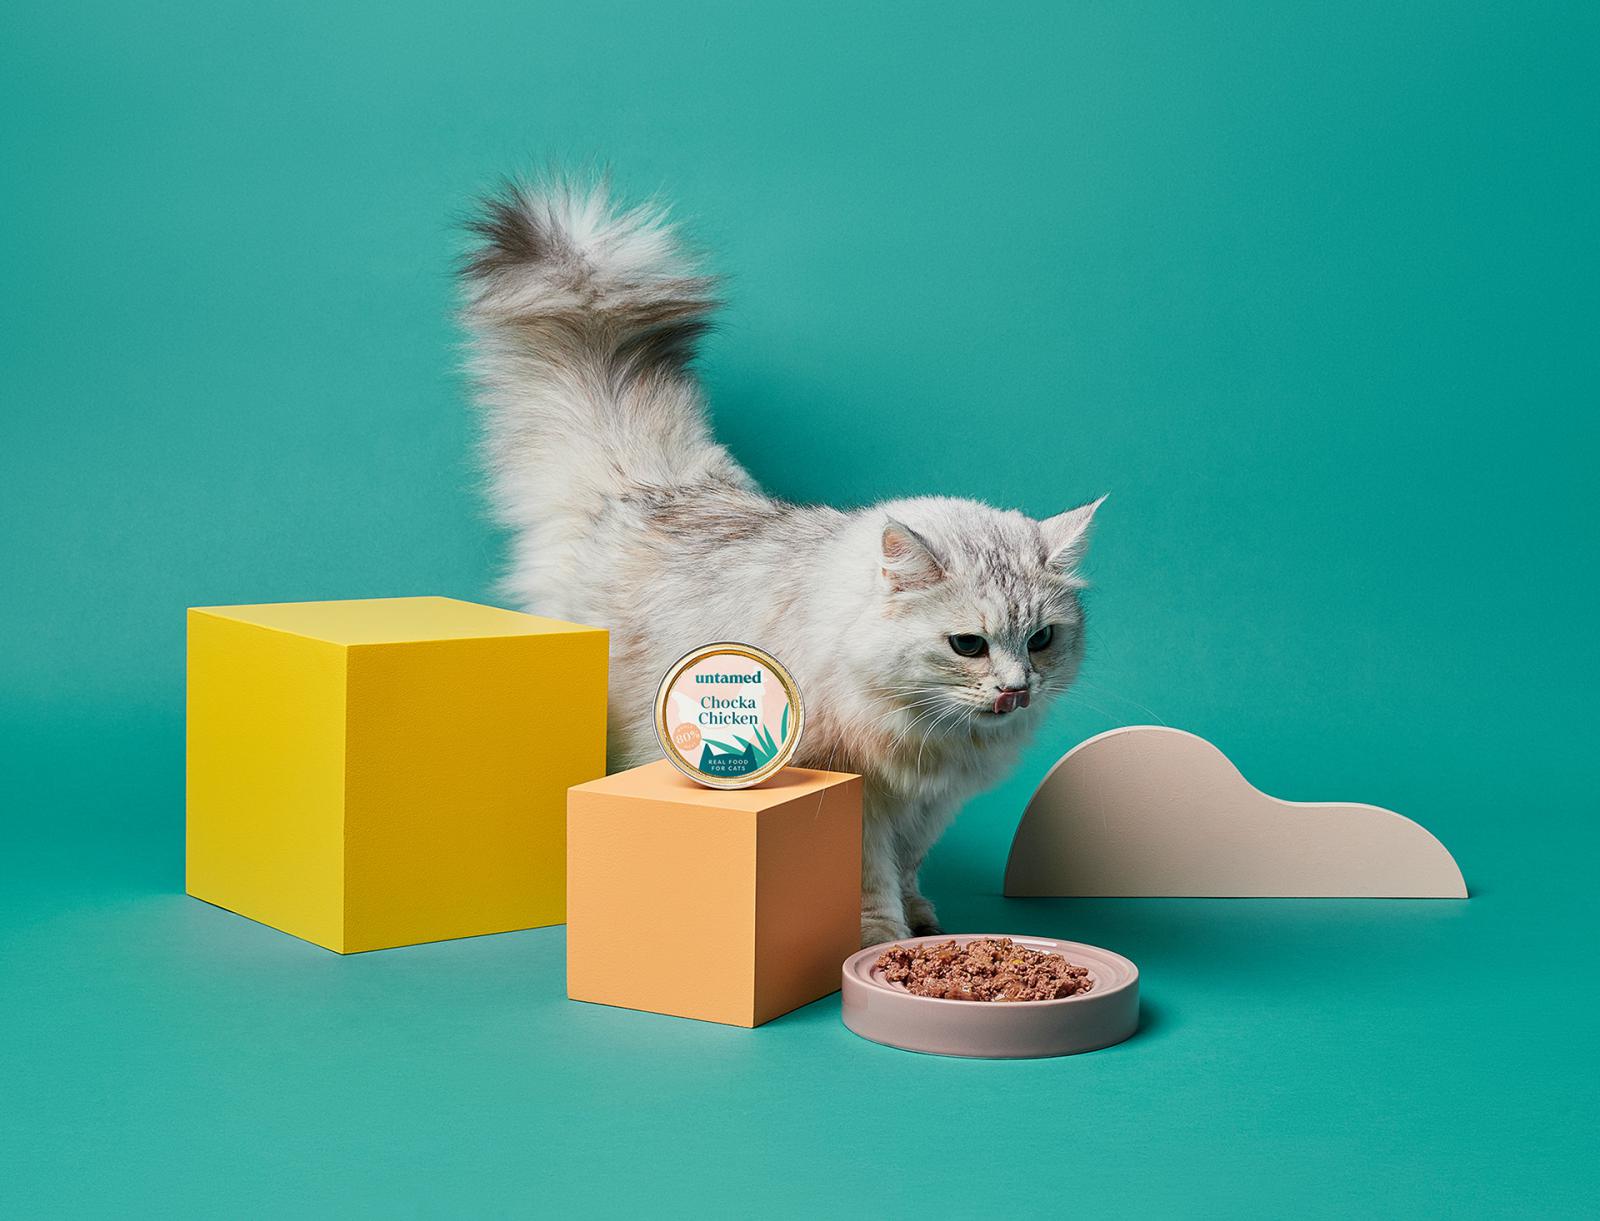 猫粮包装设计 猫粮包装设计哪家好 上海猫粮包装设计公司 宠物食品包装设计公司 第3张